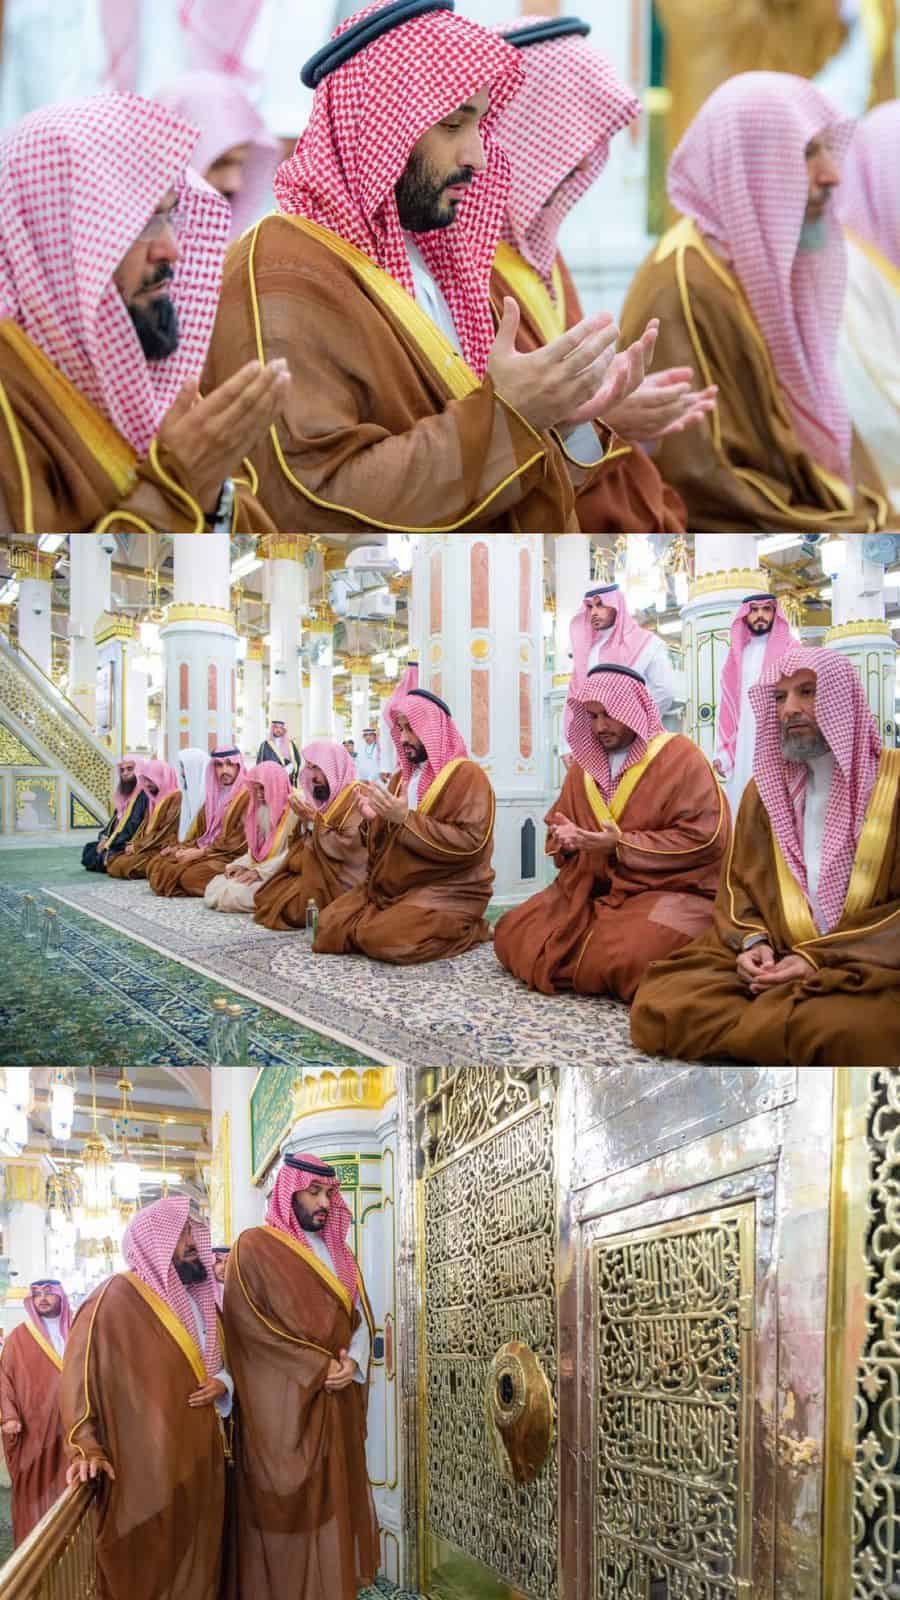 الرئيس العام : الامير محمد بن سلمان حريص على الوقوف شخصياً لاحتياجات المسجد النبوي